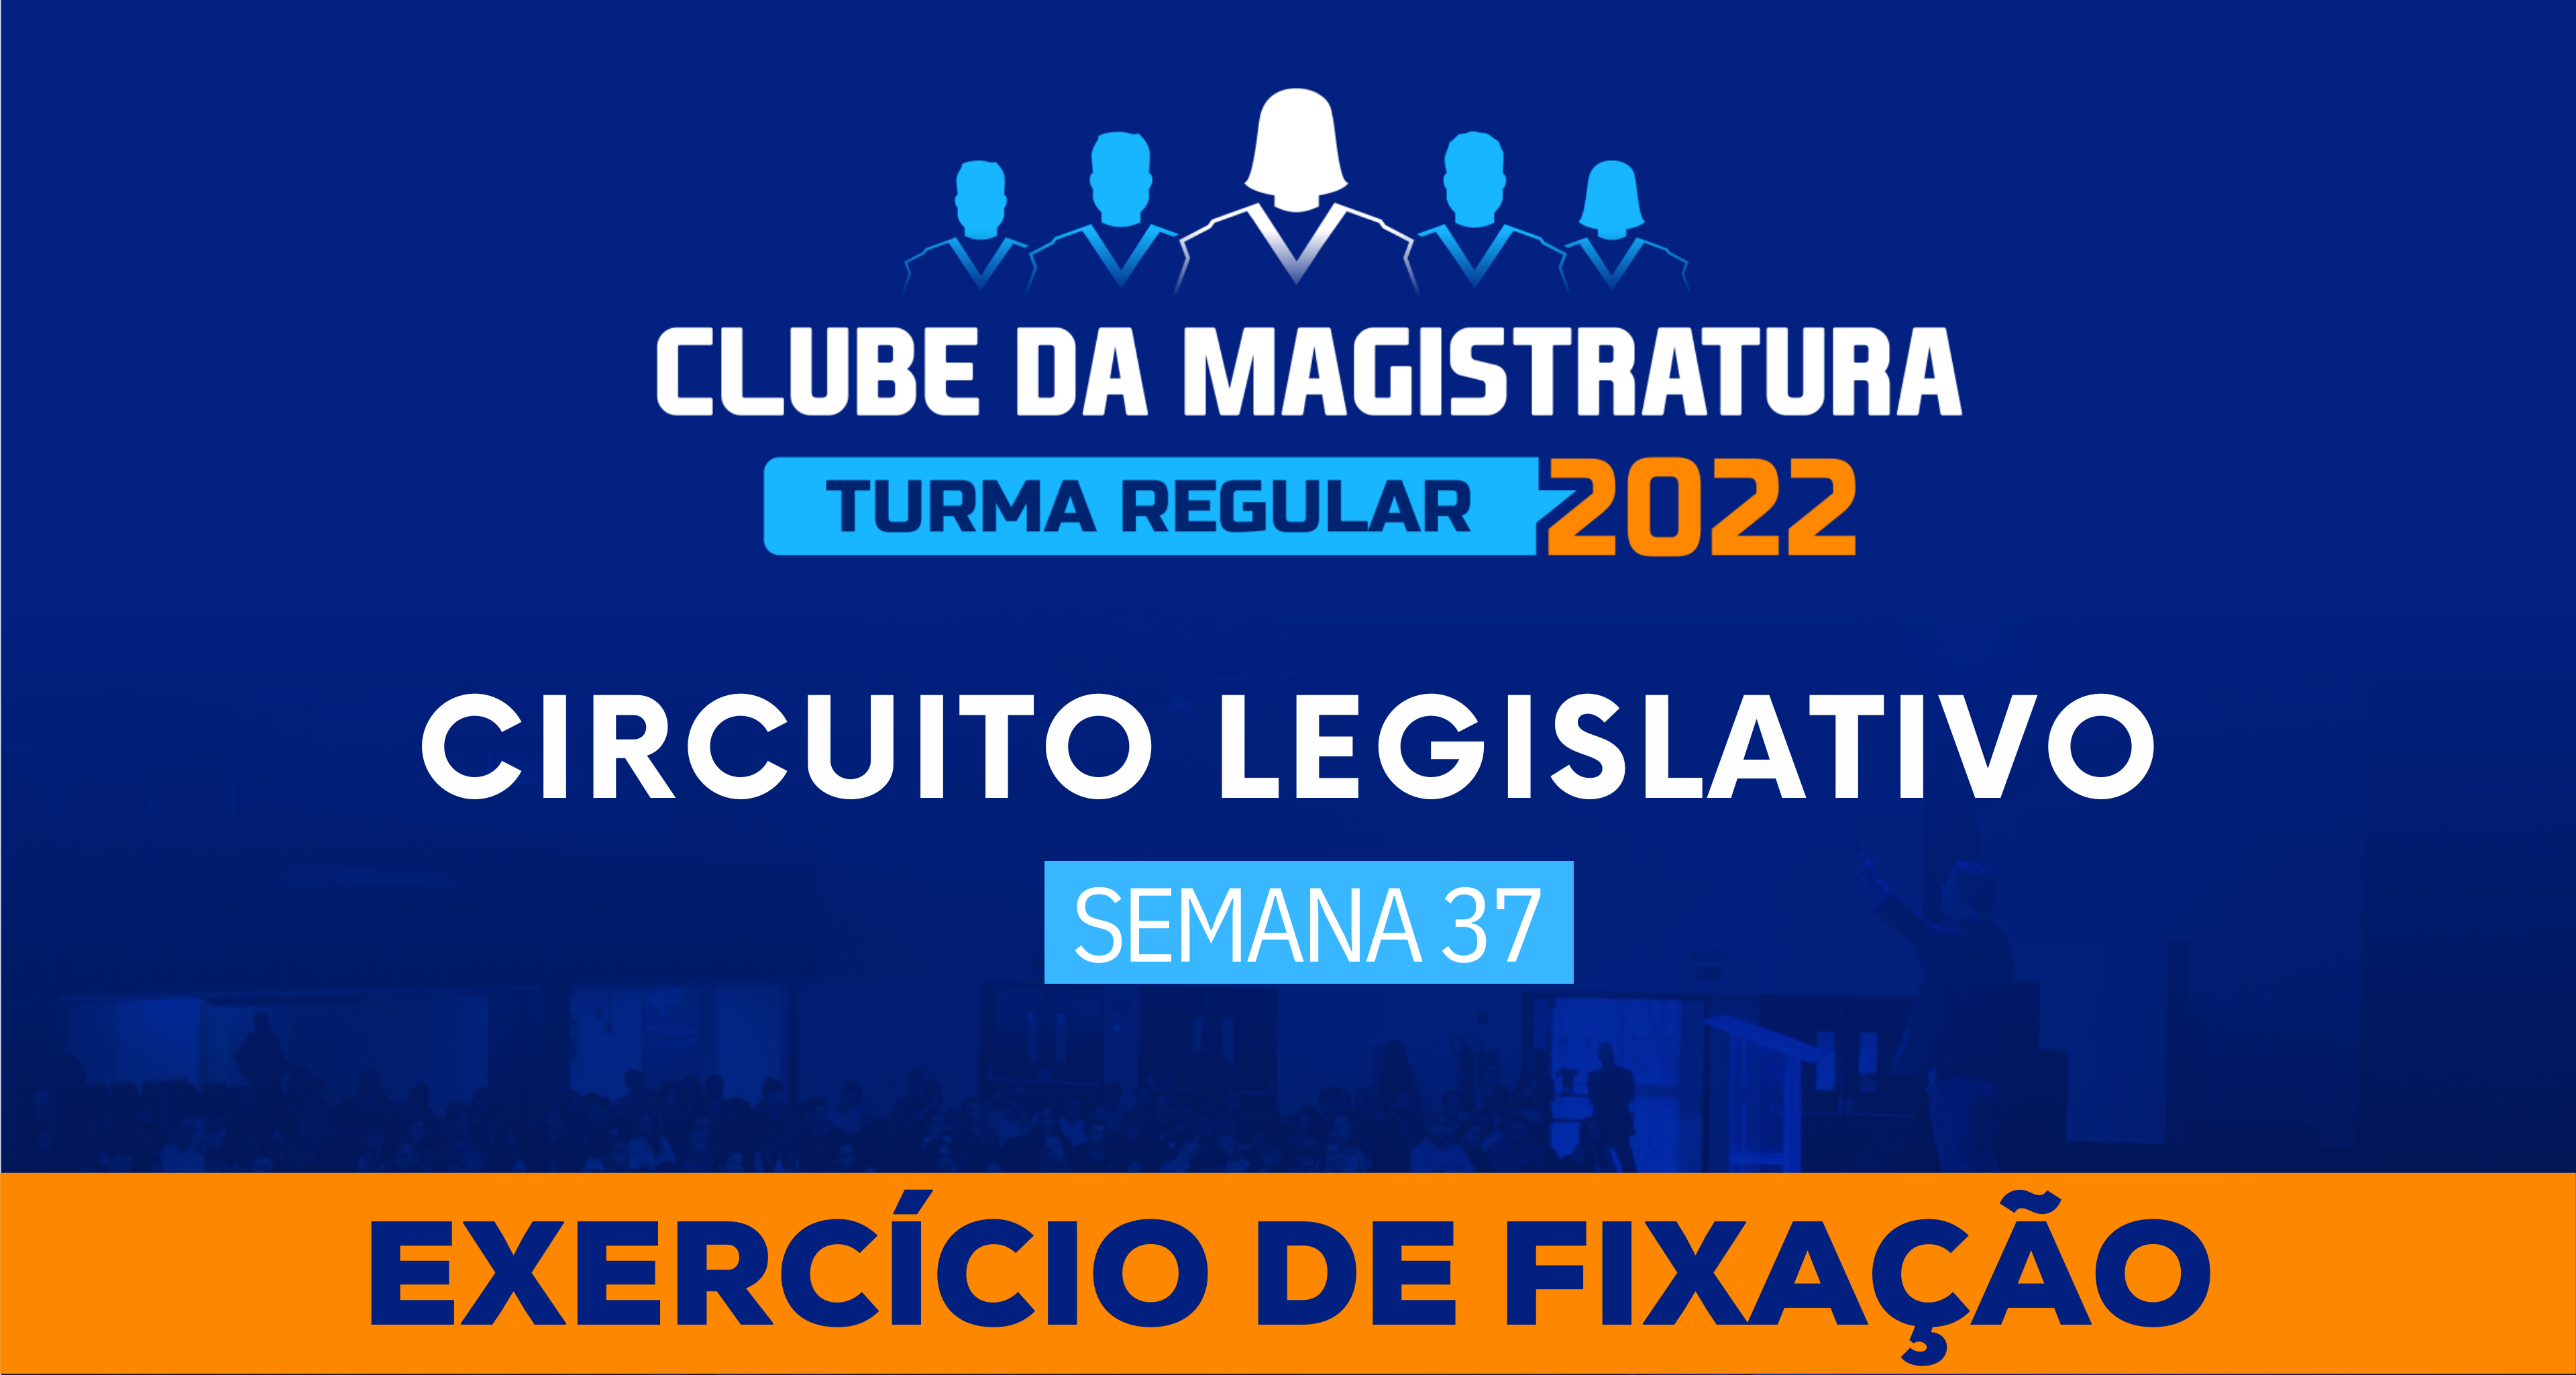 Circuito Legislativo 2022.1 (Clube da Magistratura - Semana 37)